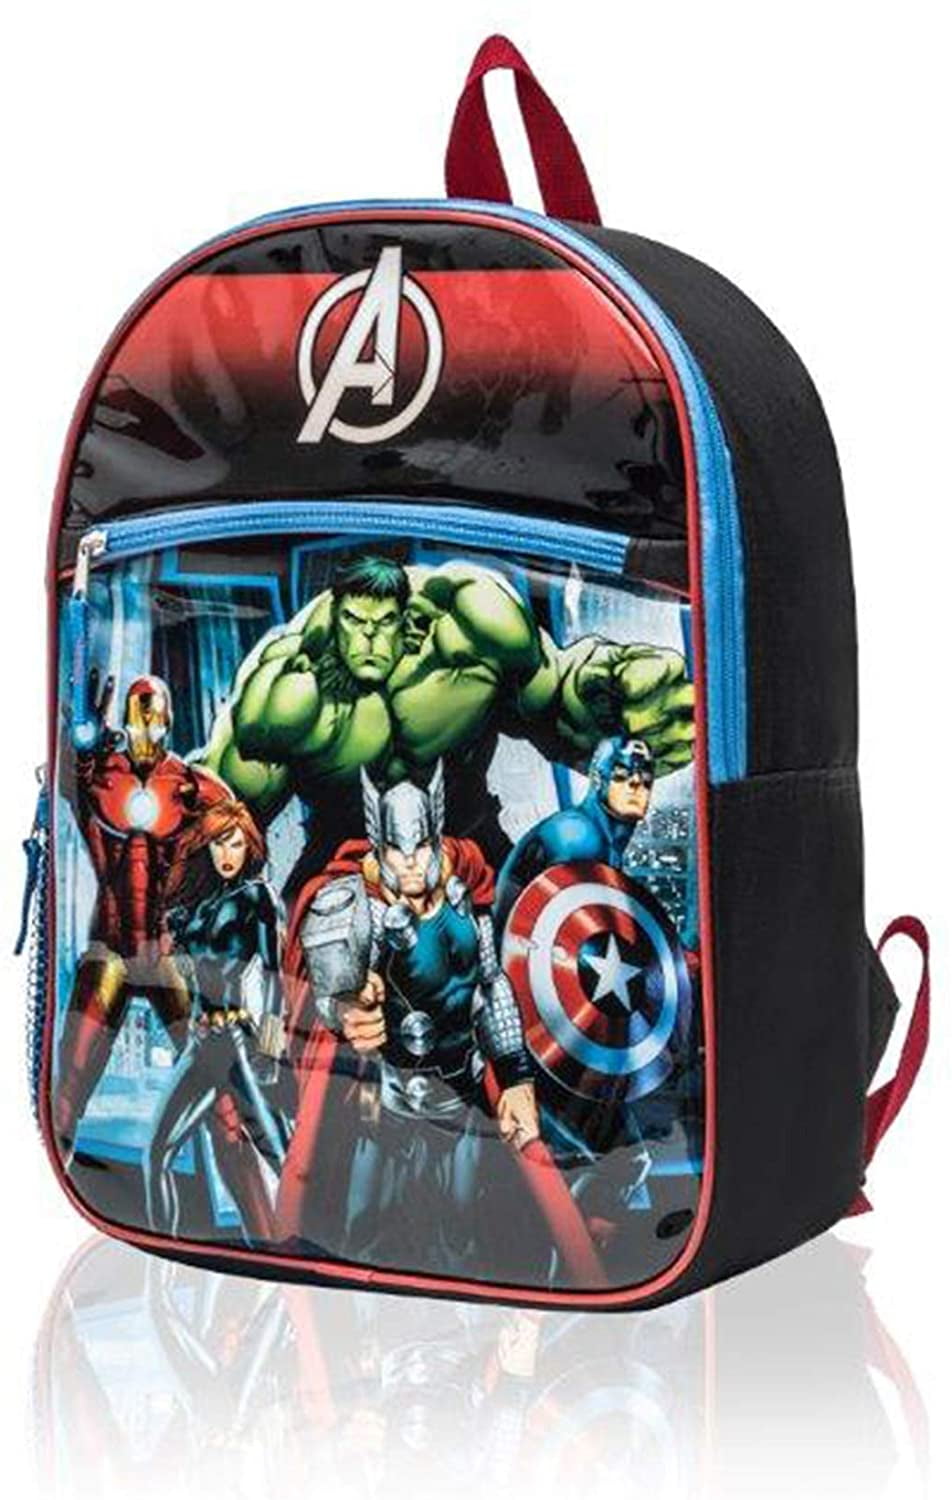 Personnalisé Enfants Sac à dos tout nom Avengers garçon Childrens BACK TO SCHOOL BAG 3 